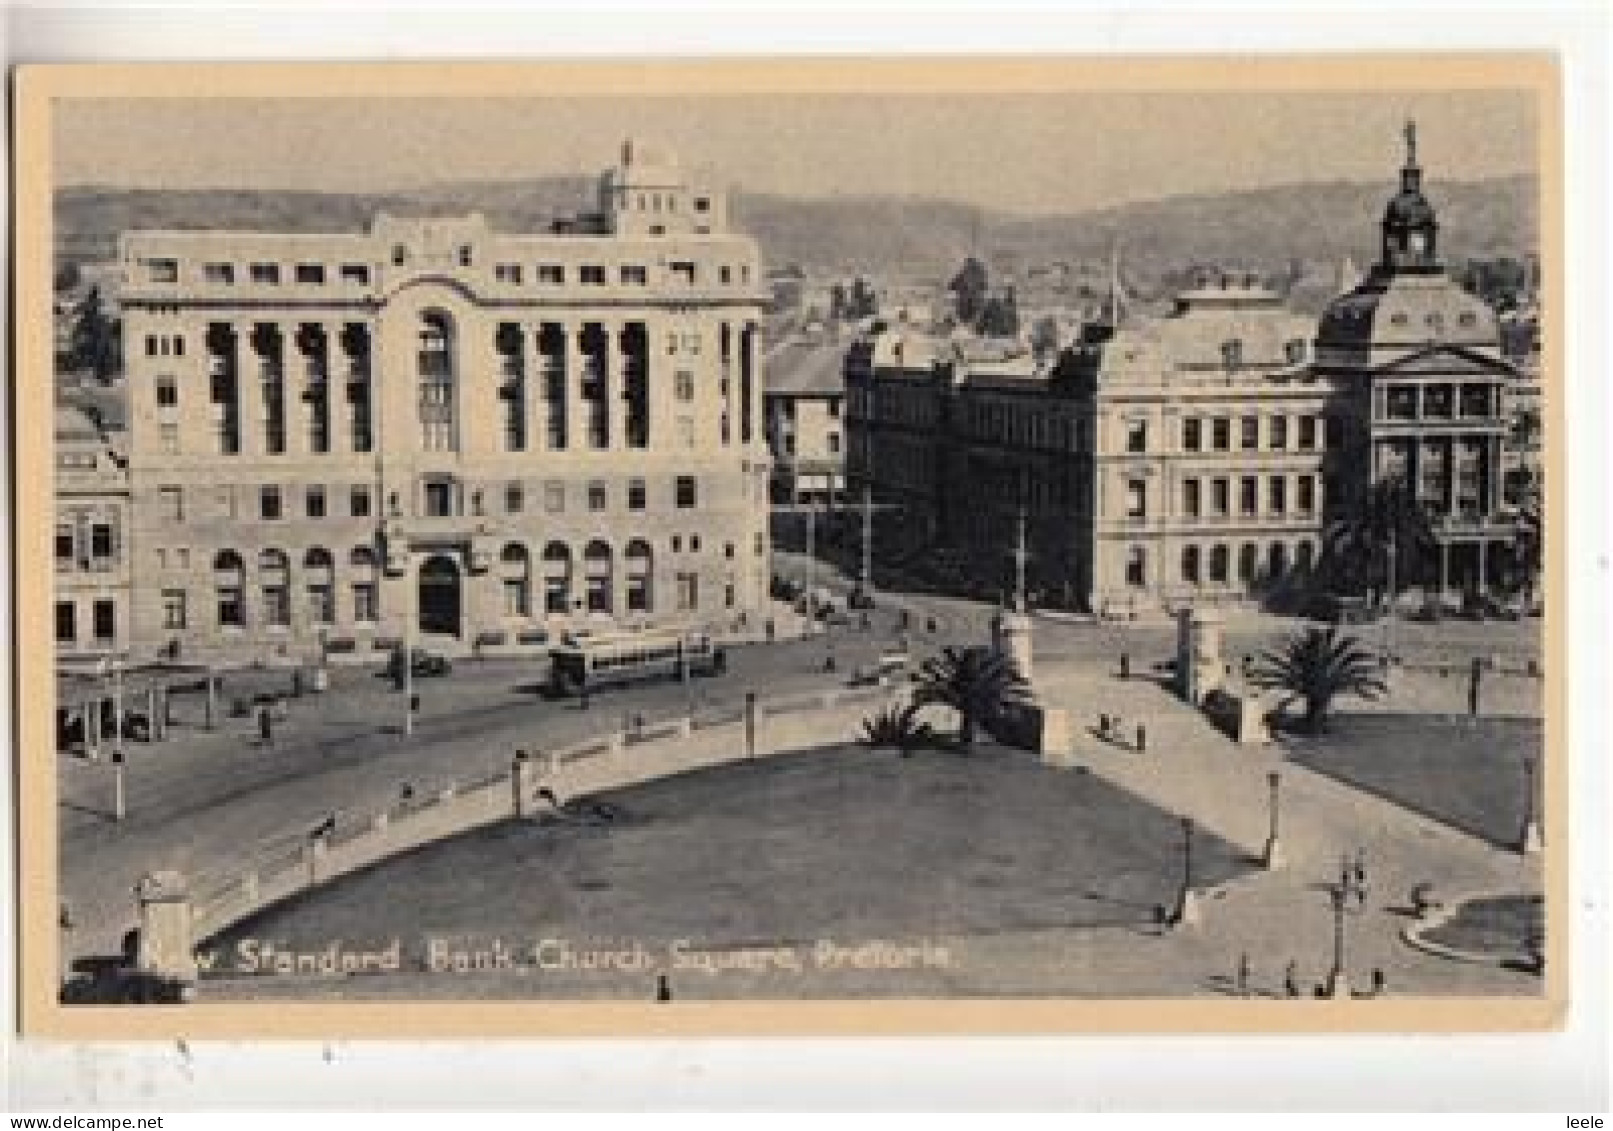 D22.  Vintage Postcard. New Standard Bank, Church Square, Pretoria. South Africa. - Afrique Du Sud